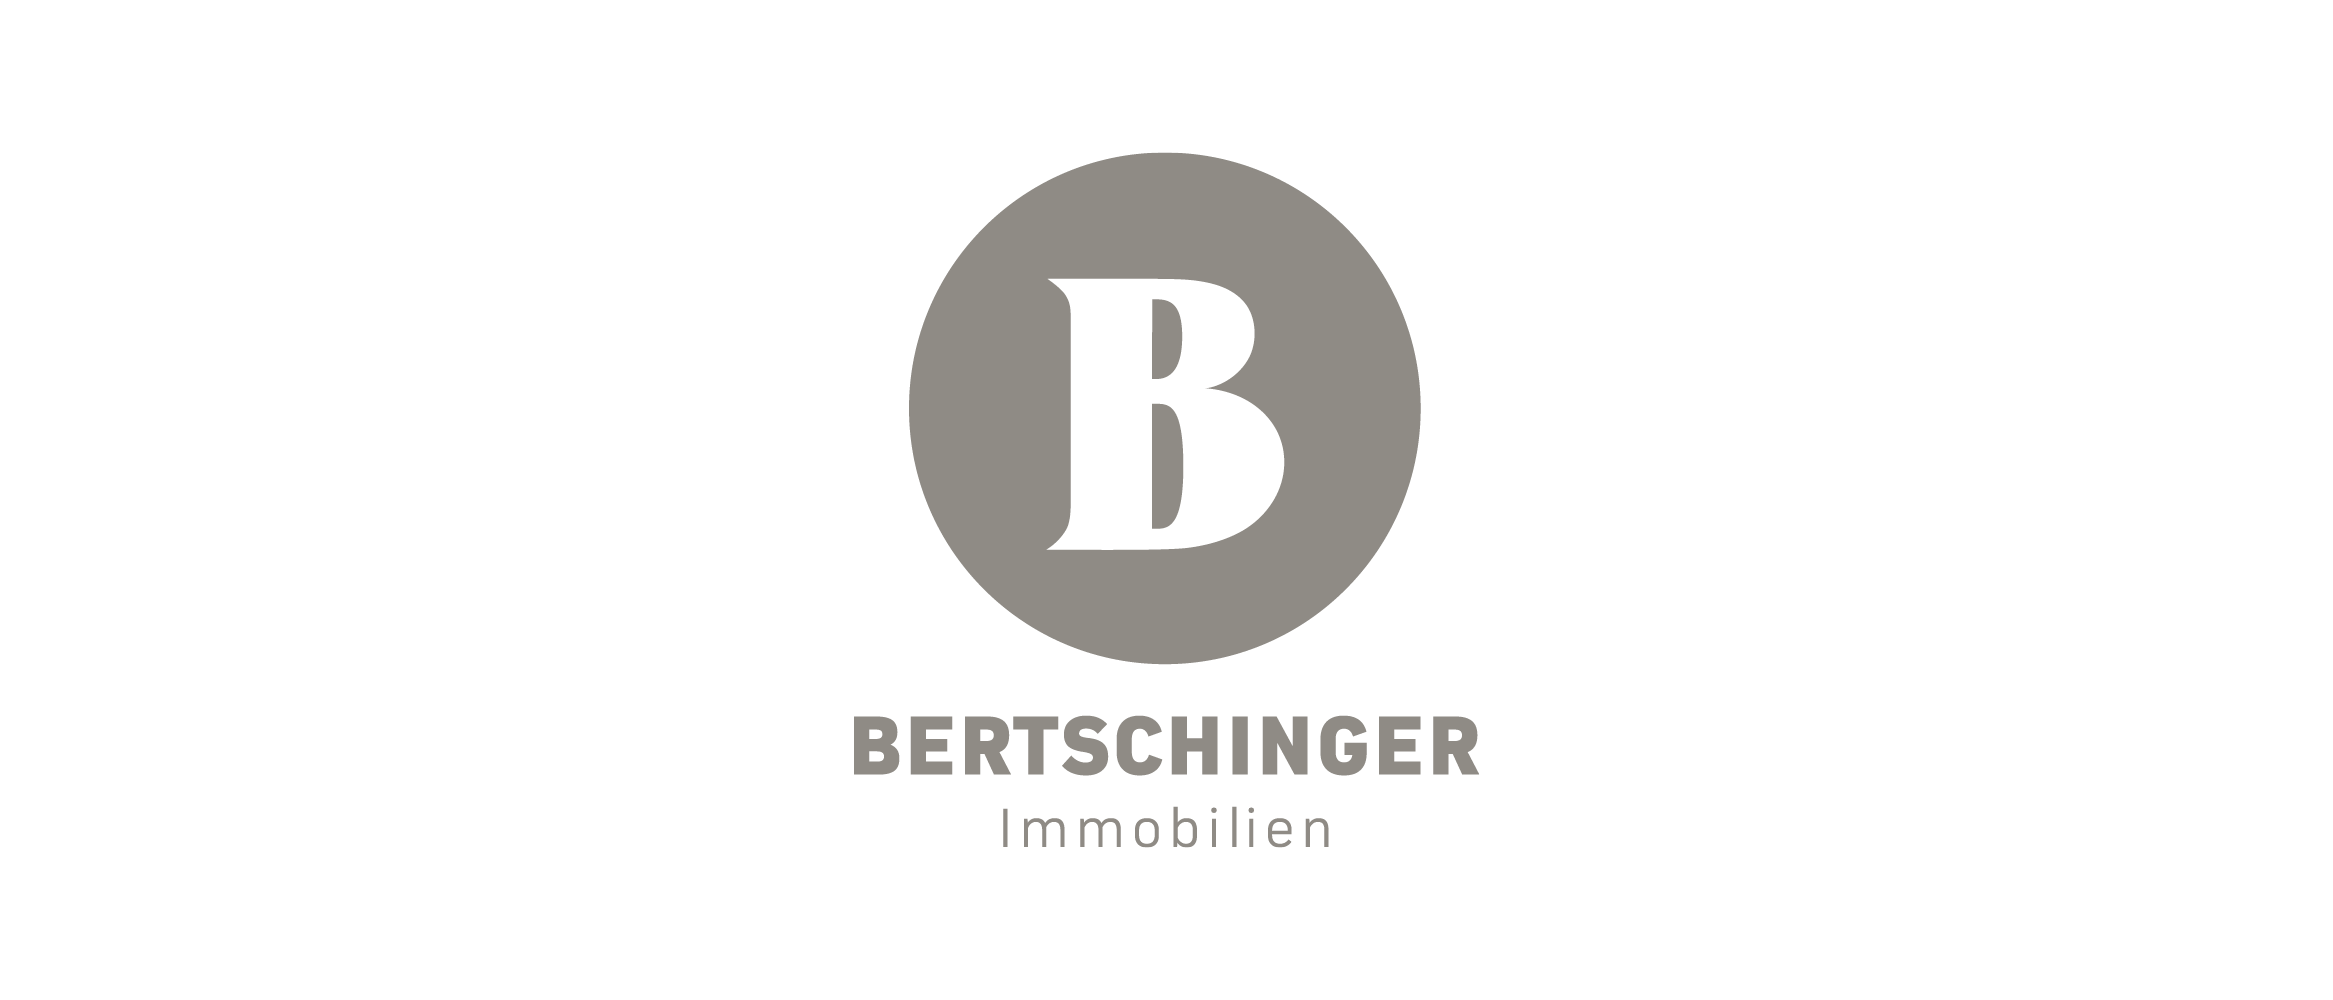 Bertschinger Immobilien AG